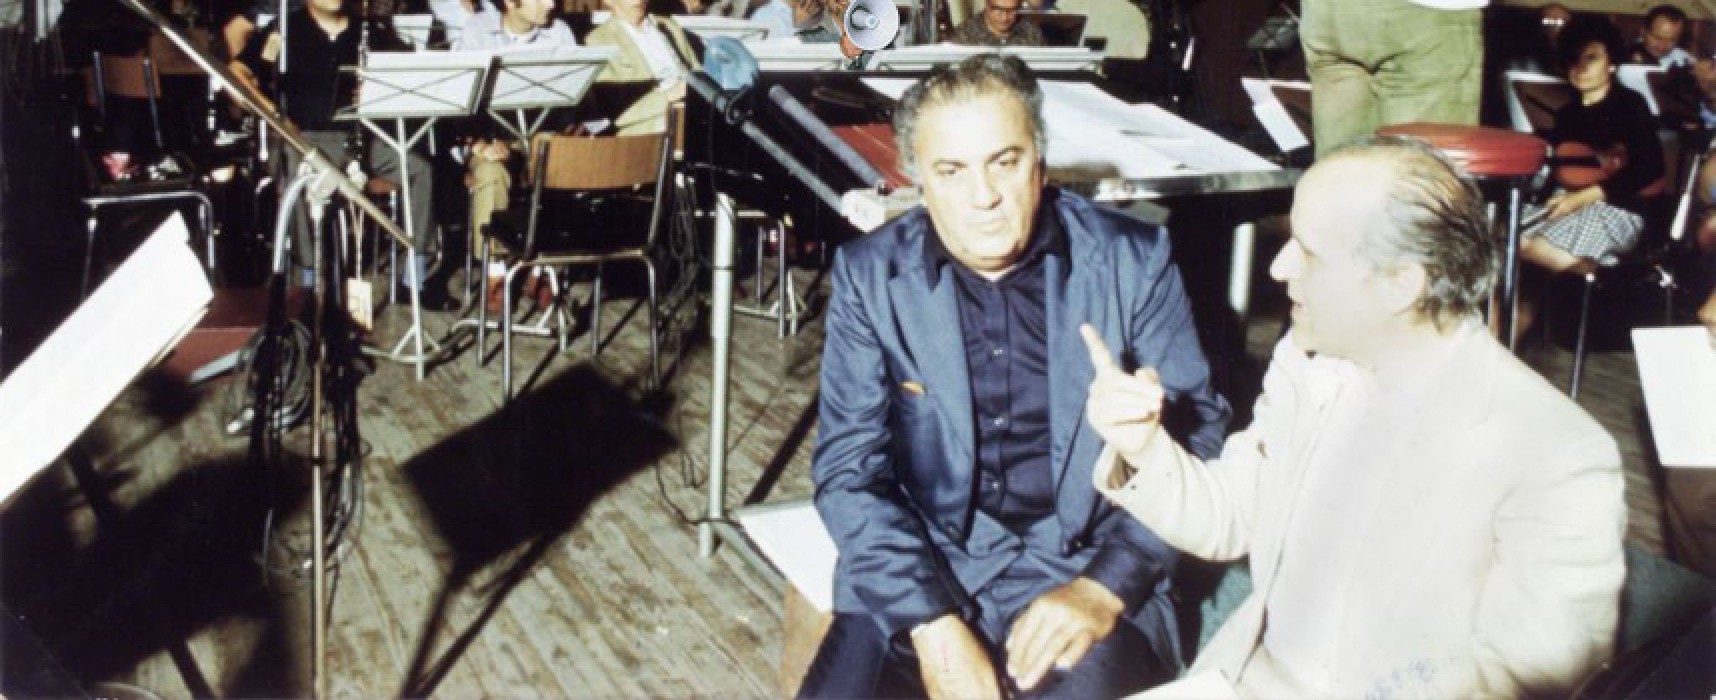 Museo Diocesano, una mostra dedicata a due grandi Maestri: Nino Rota e Federico Fellini